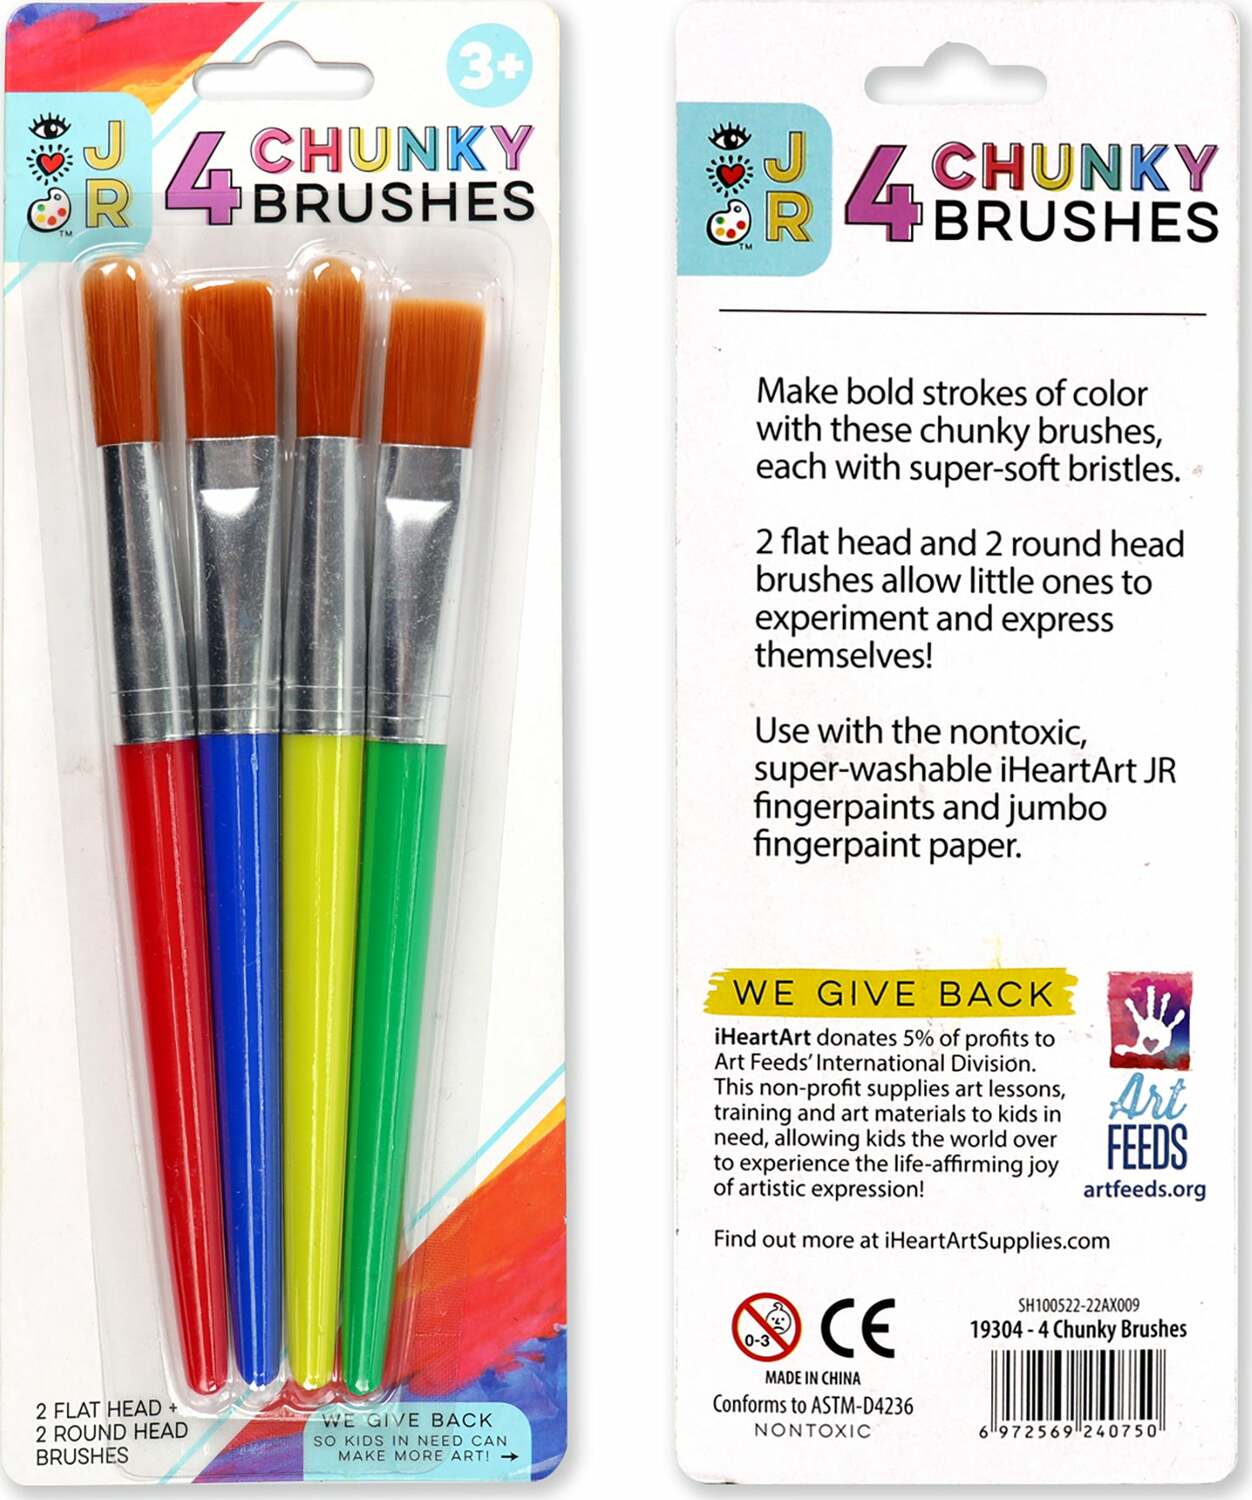 4 Chunky Brushes